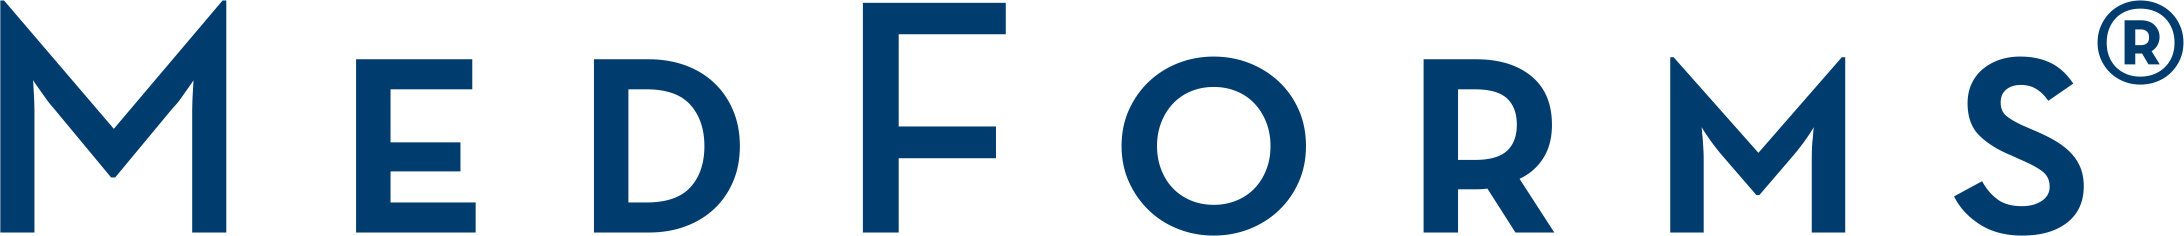 medform-logo-blue